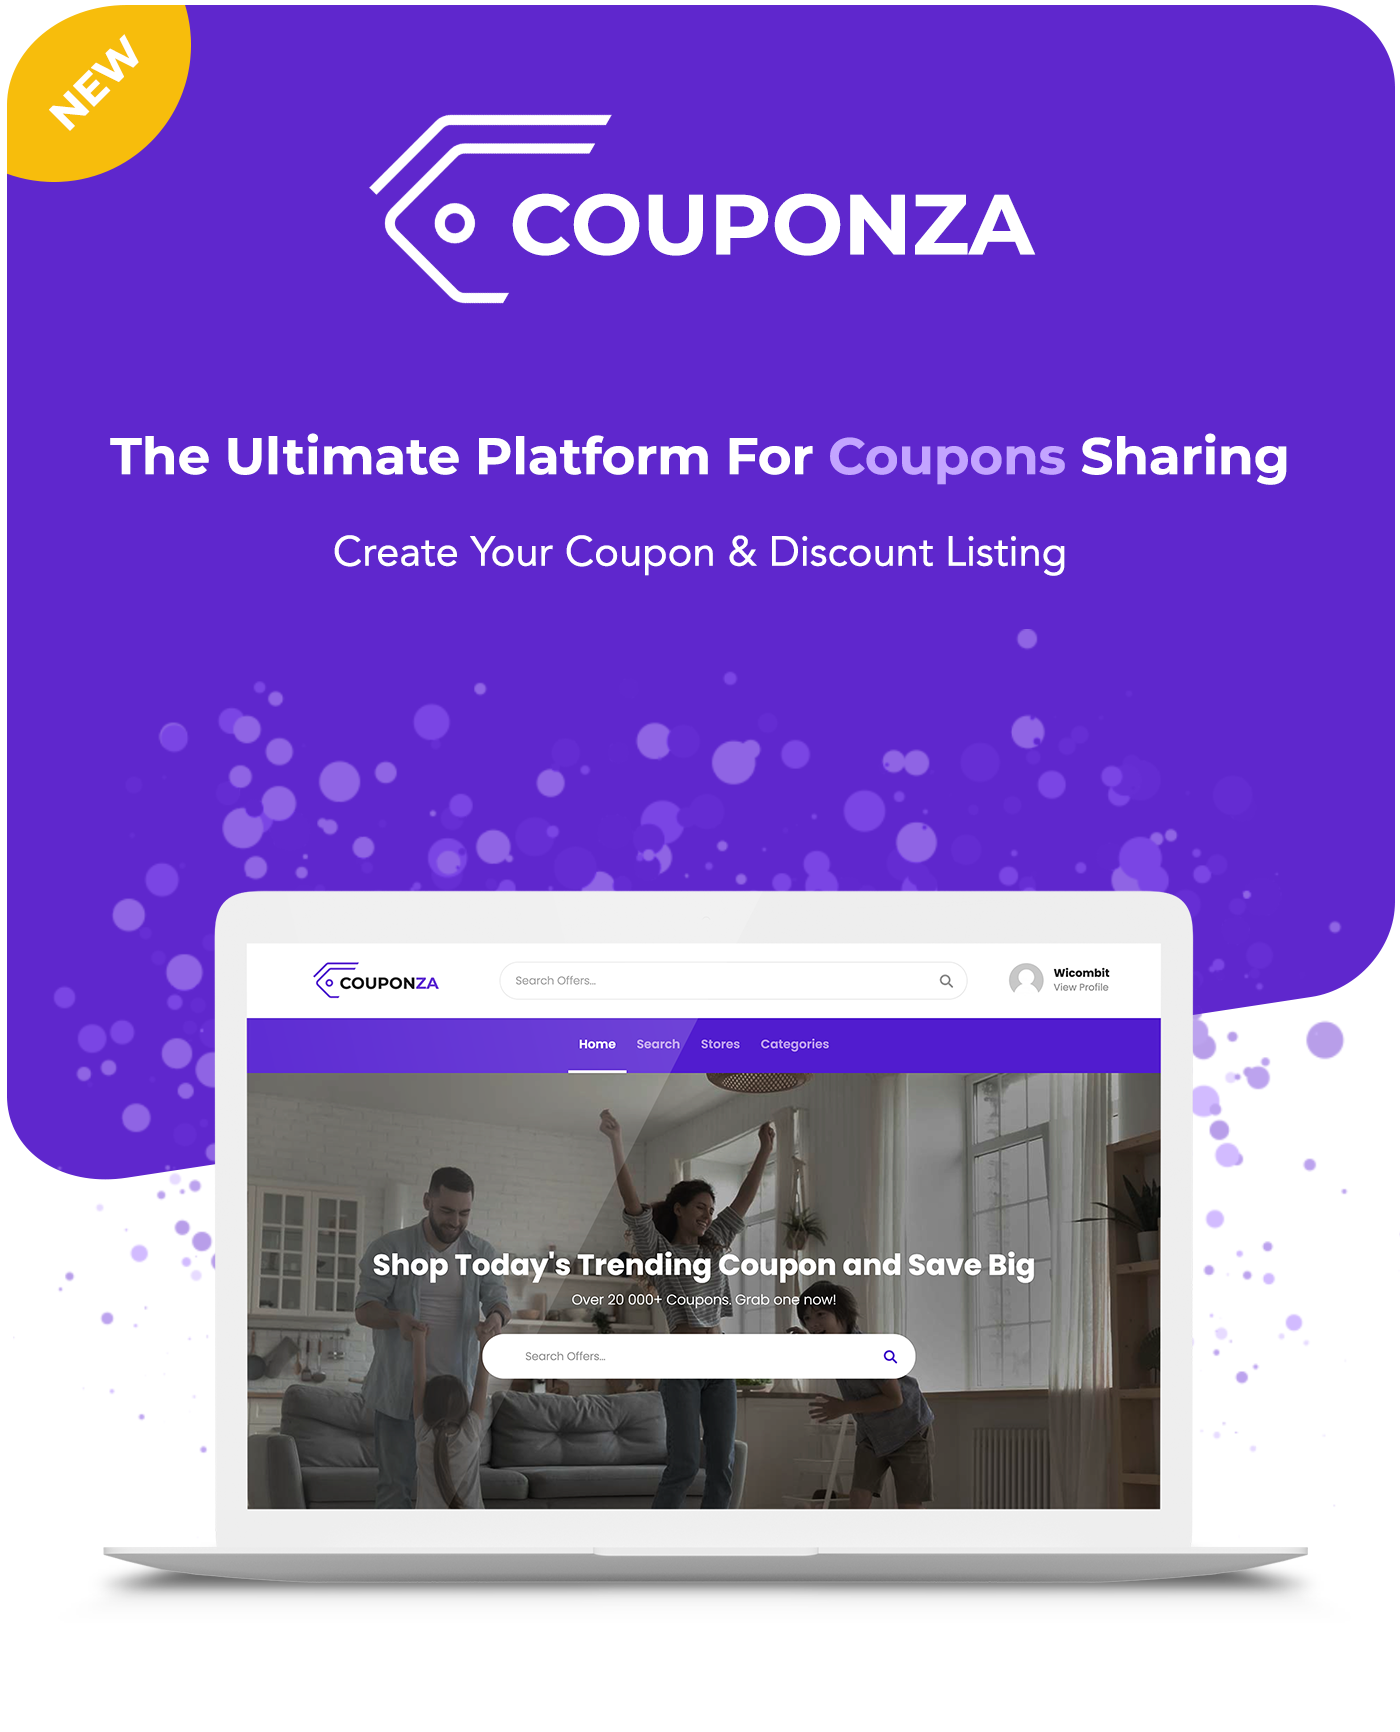 Couponza- Ultimate Coupons & Discounts Platform - 4